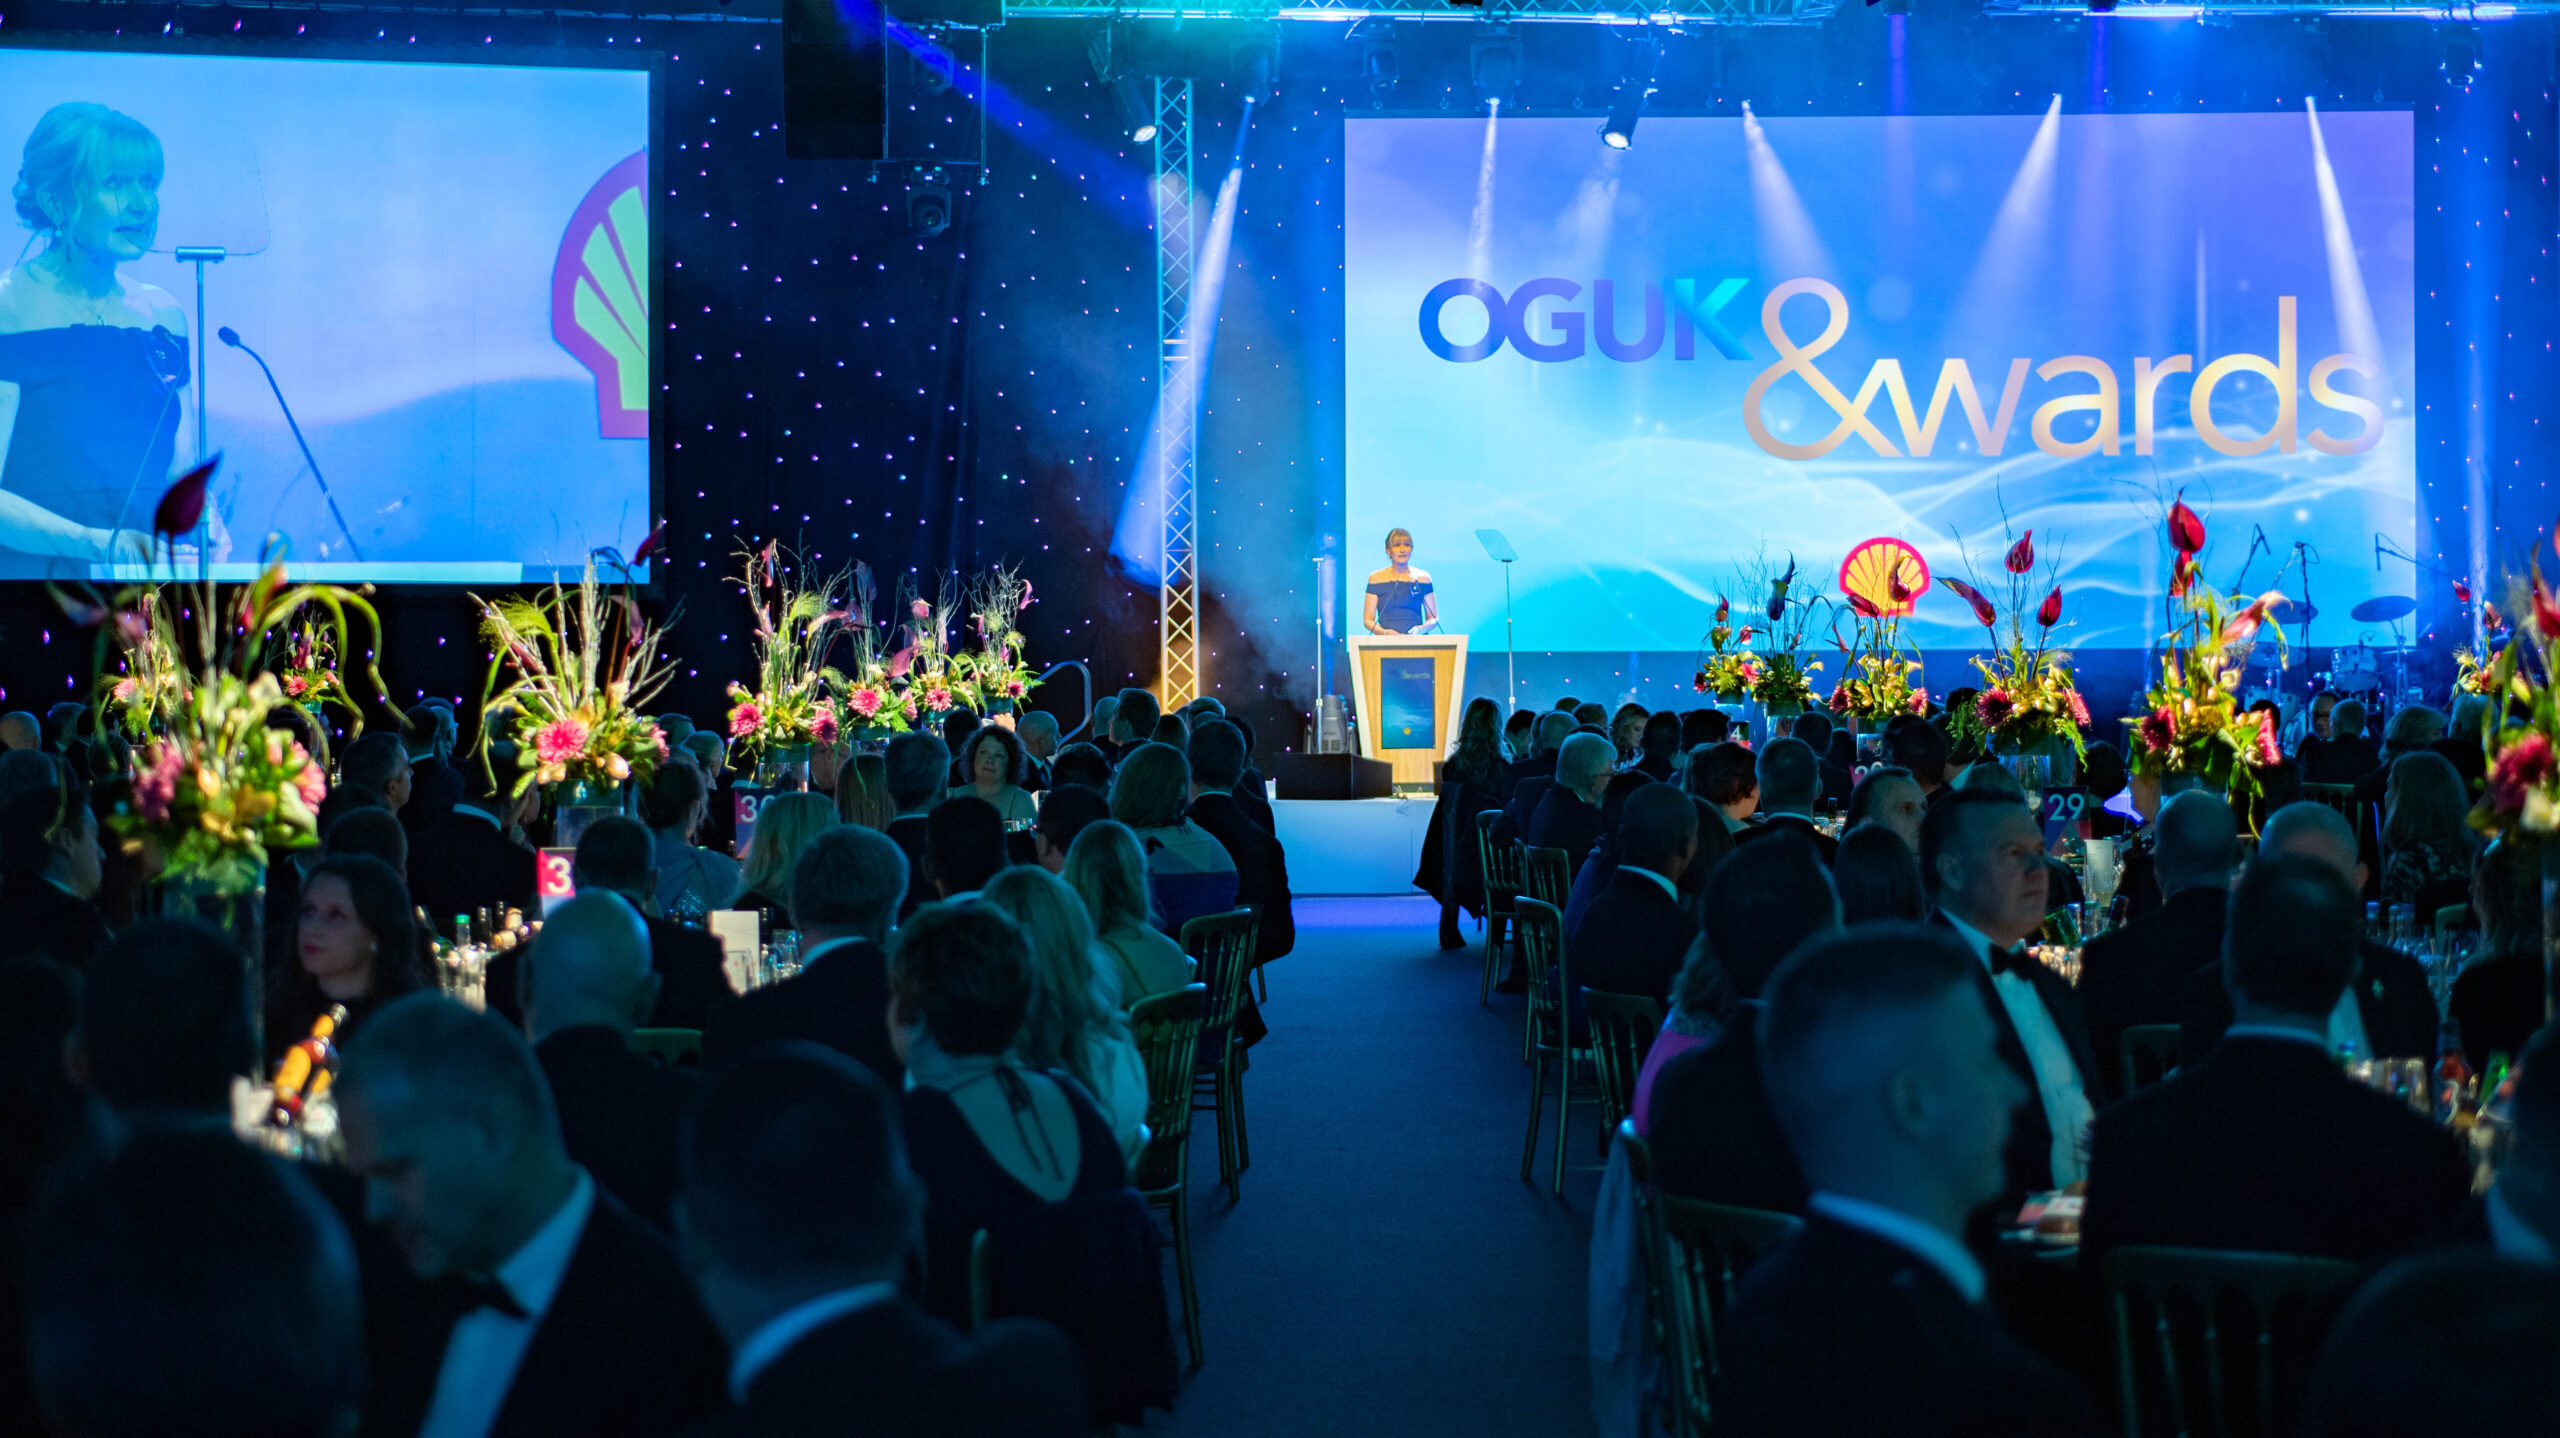 OGUK Awards 2021 - Save the Date